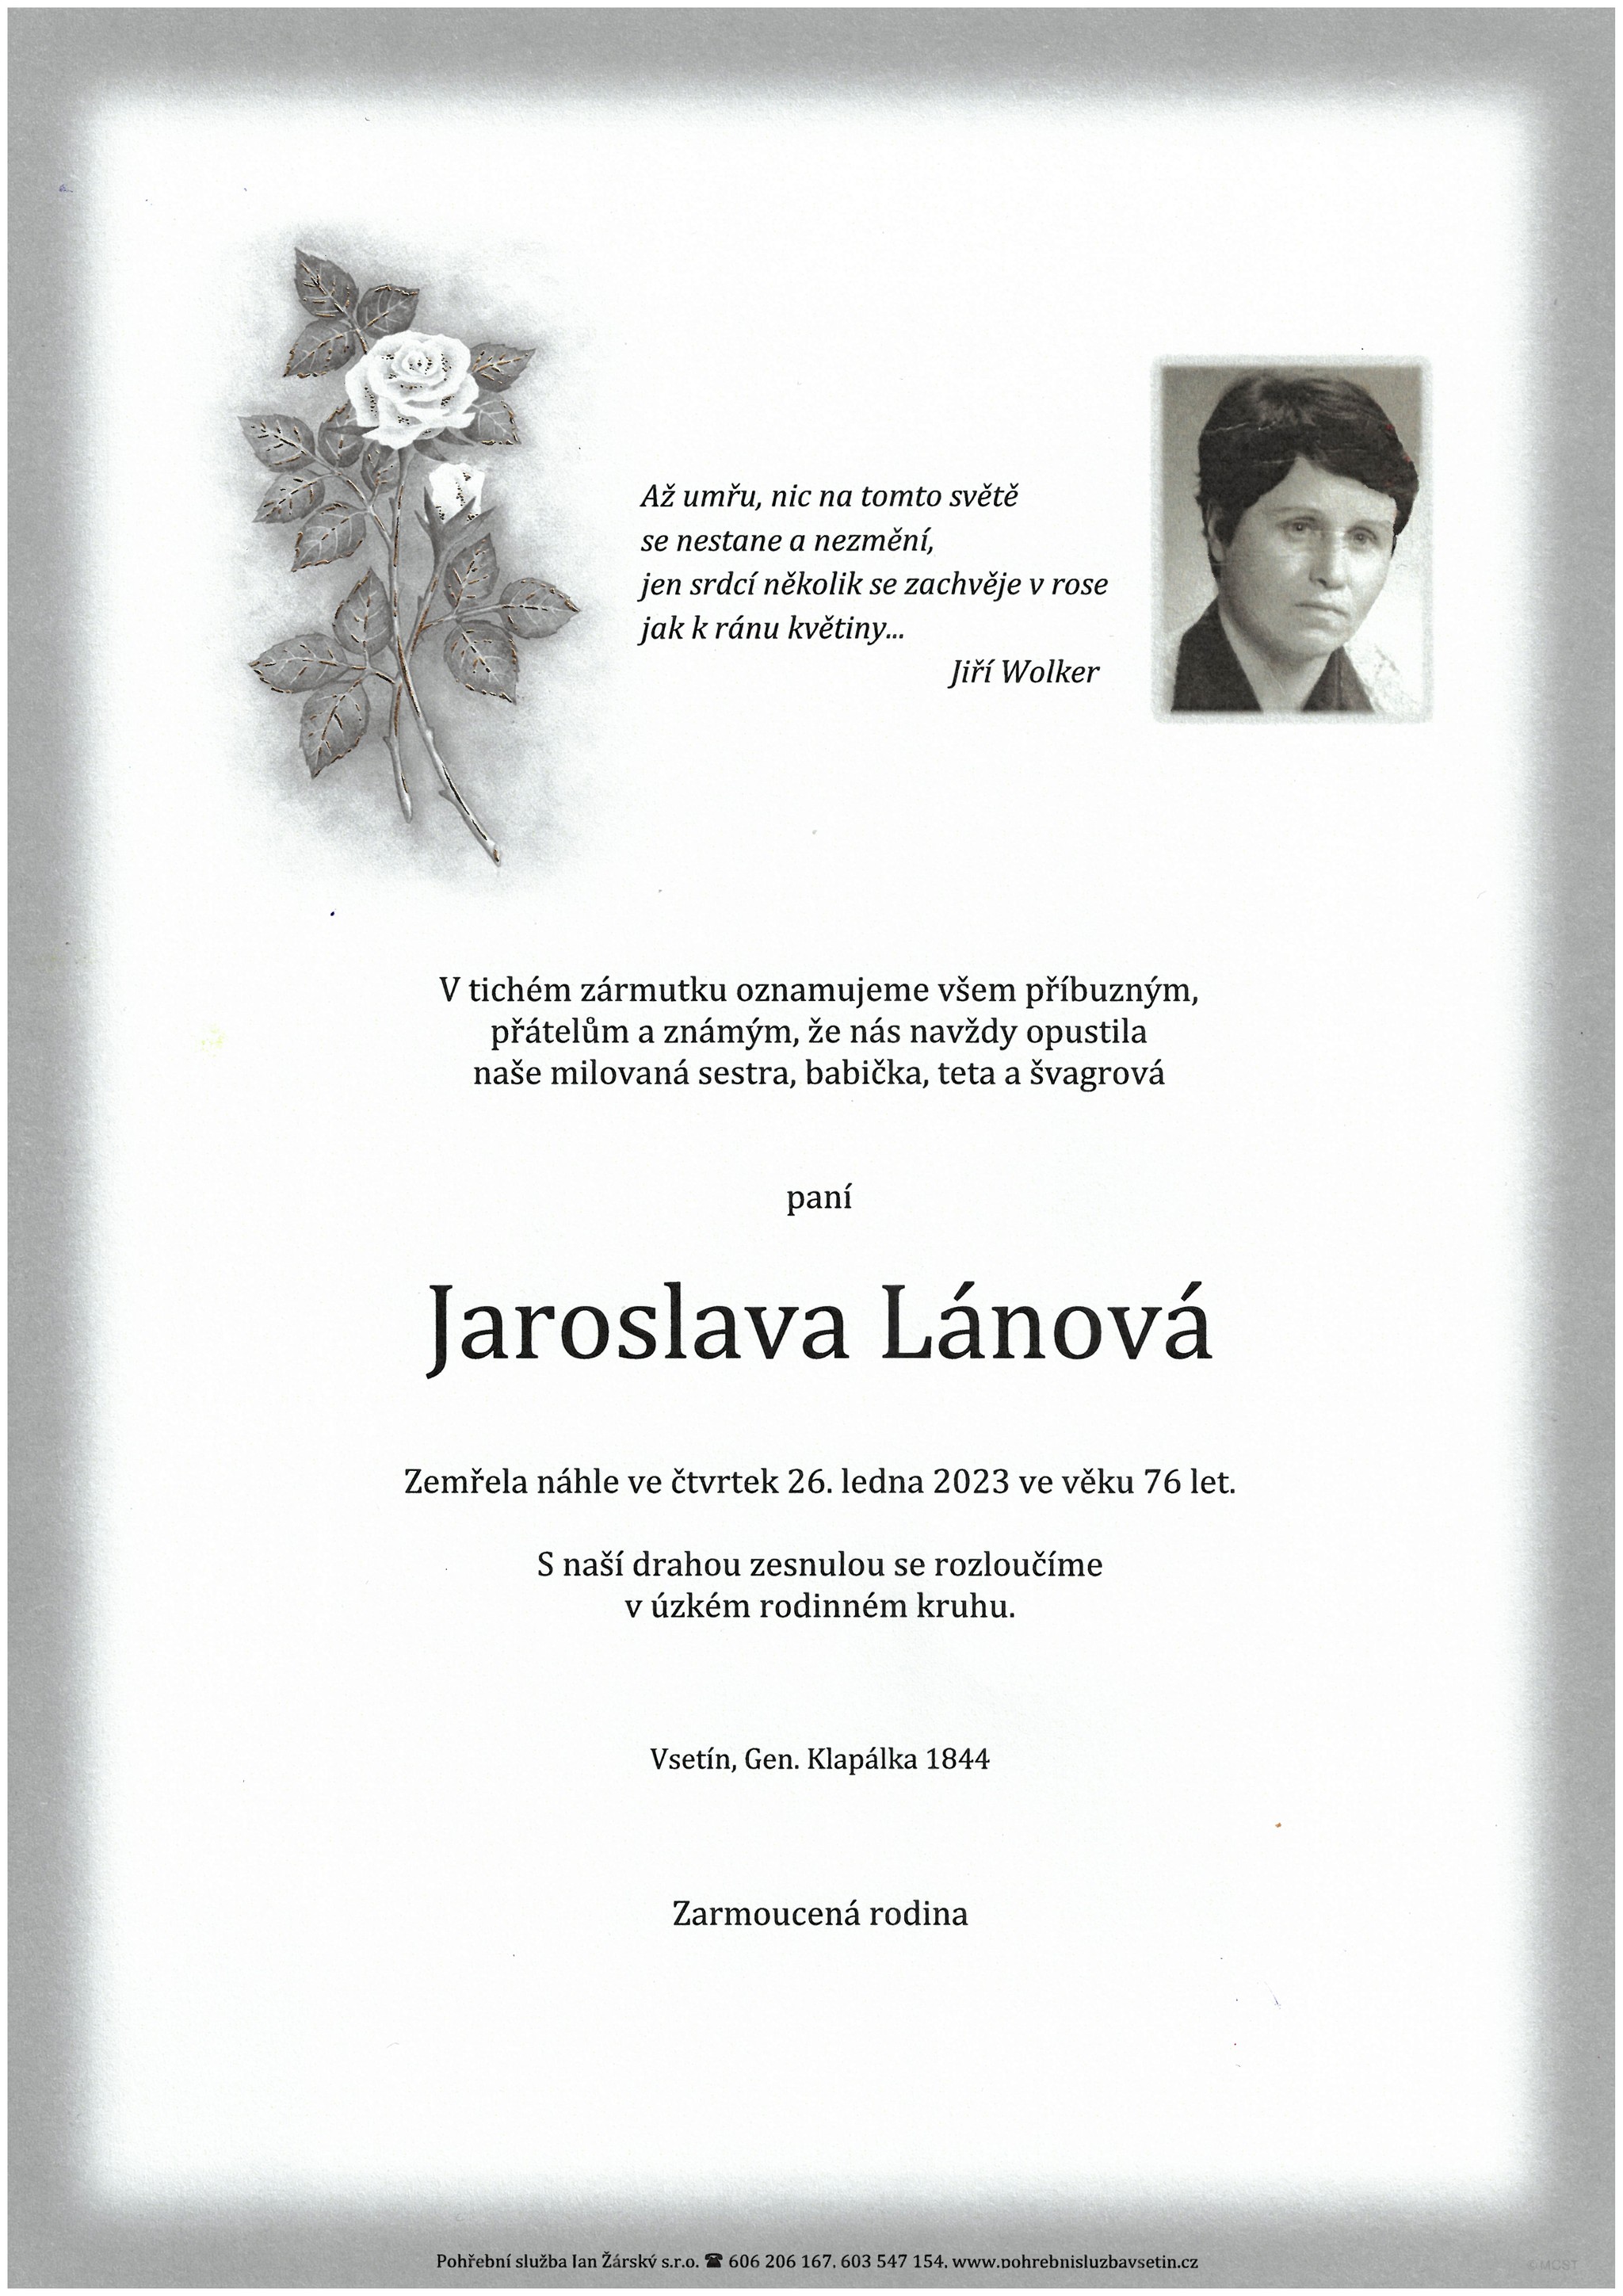 Jaroslava Lánová